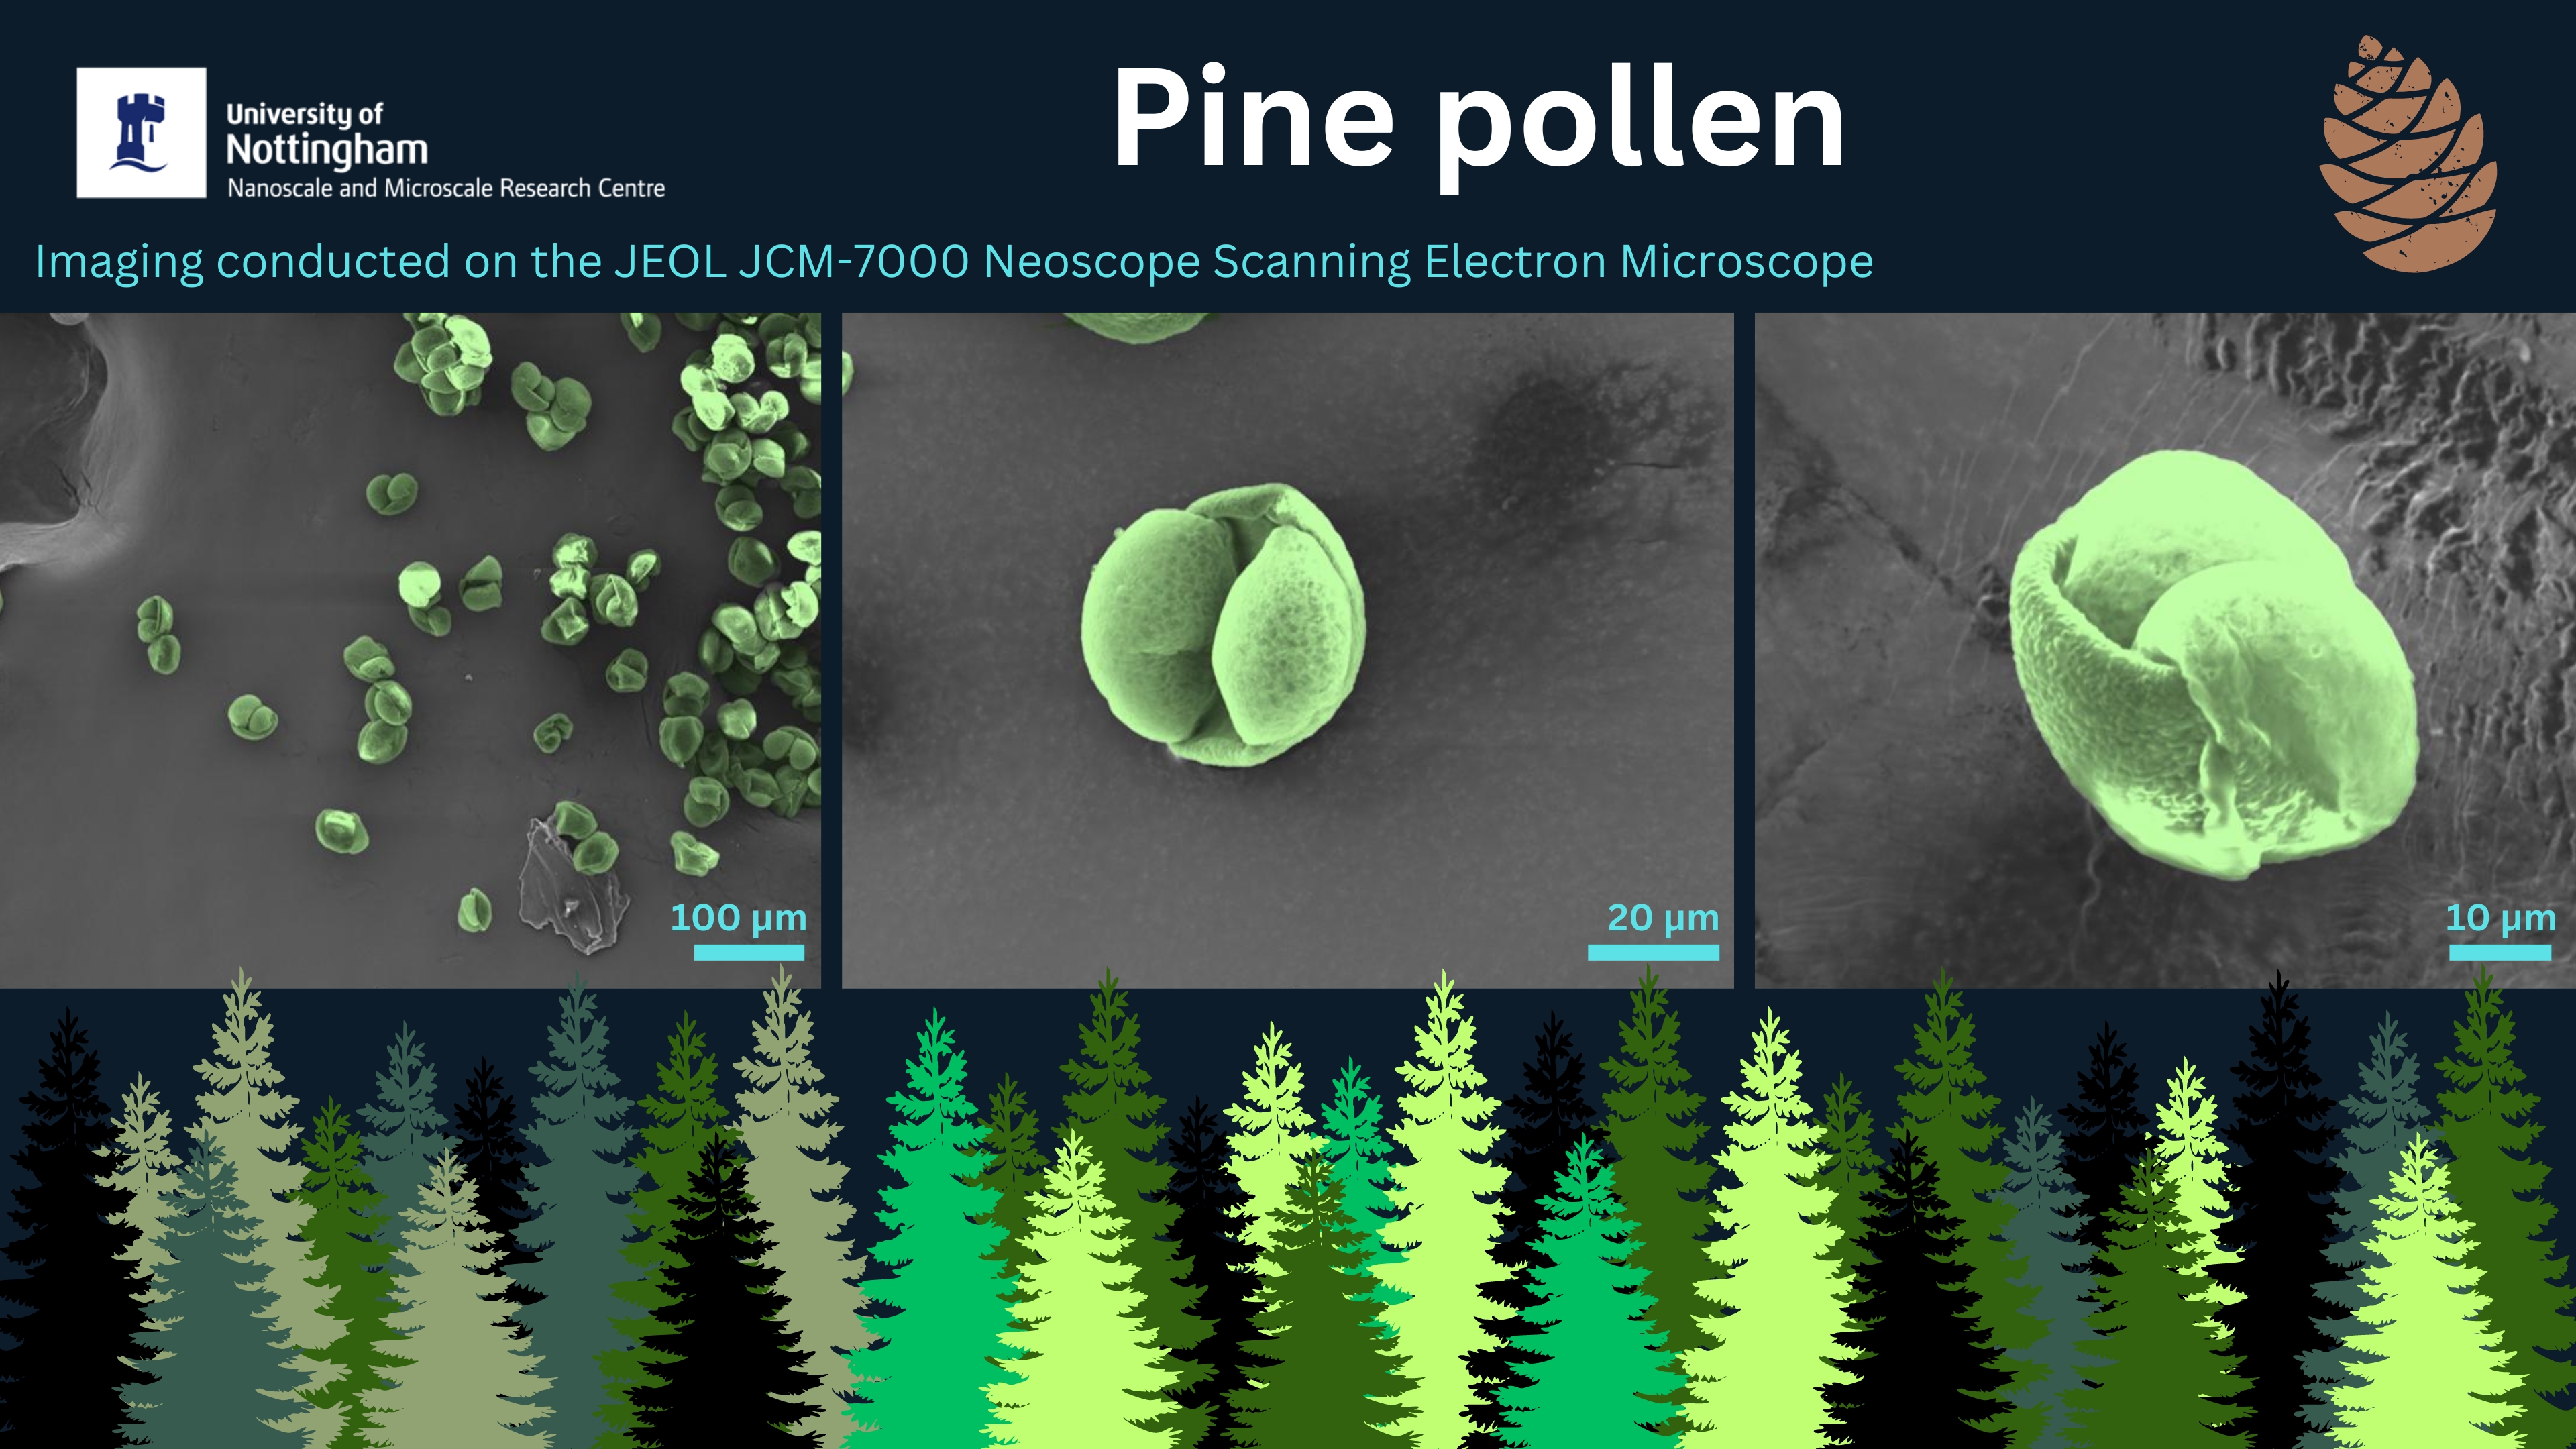 UtM Pine pollen